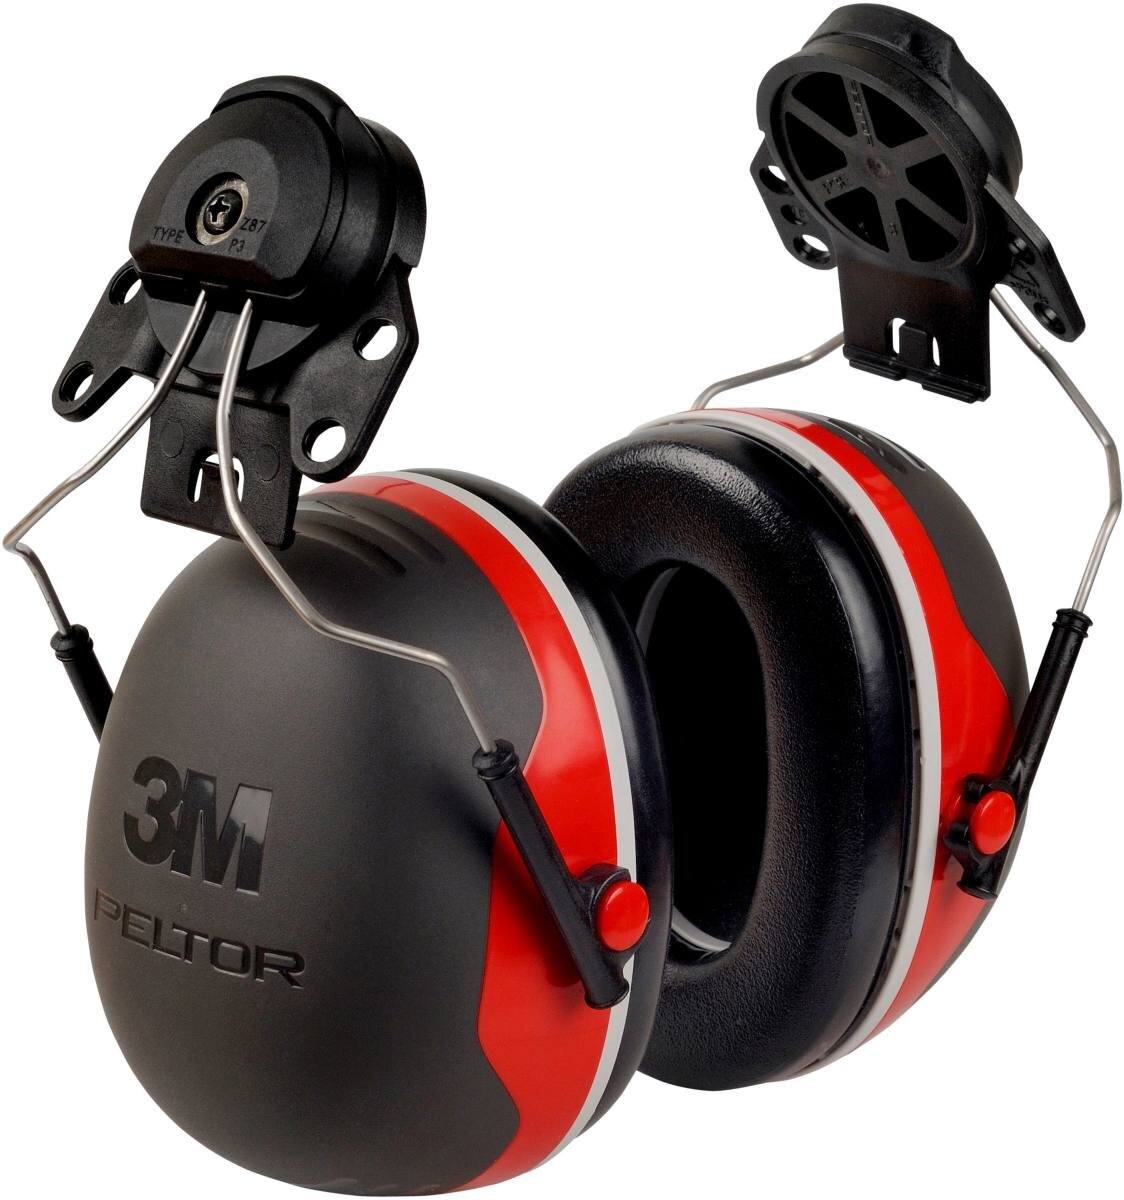 3M Peltor kuulokkeet, X3P3E kypäräkiinnitys, punainen, SNR = 32 dB kypäräadapterin P3E kanssa (kaikkiin 3M kypäräkiinnityksiin, paitsi G2000).